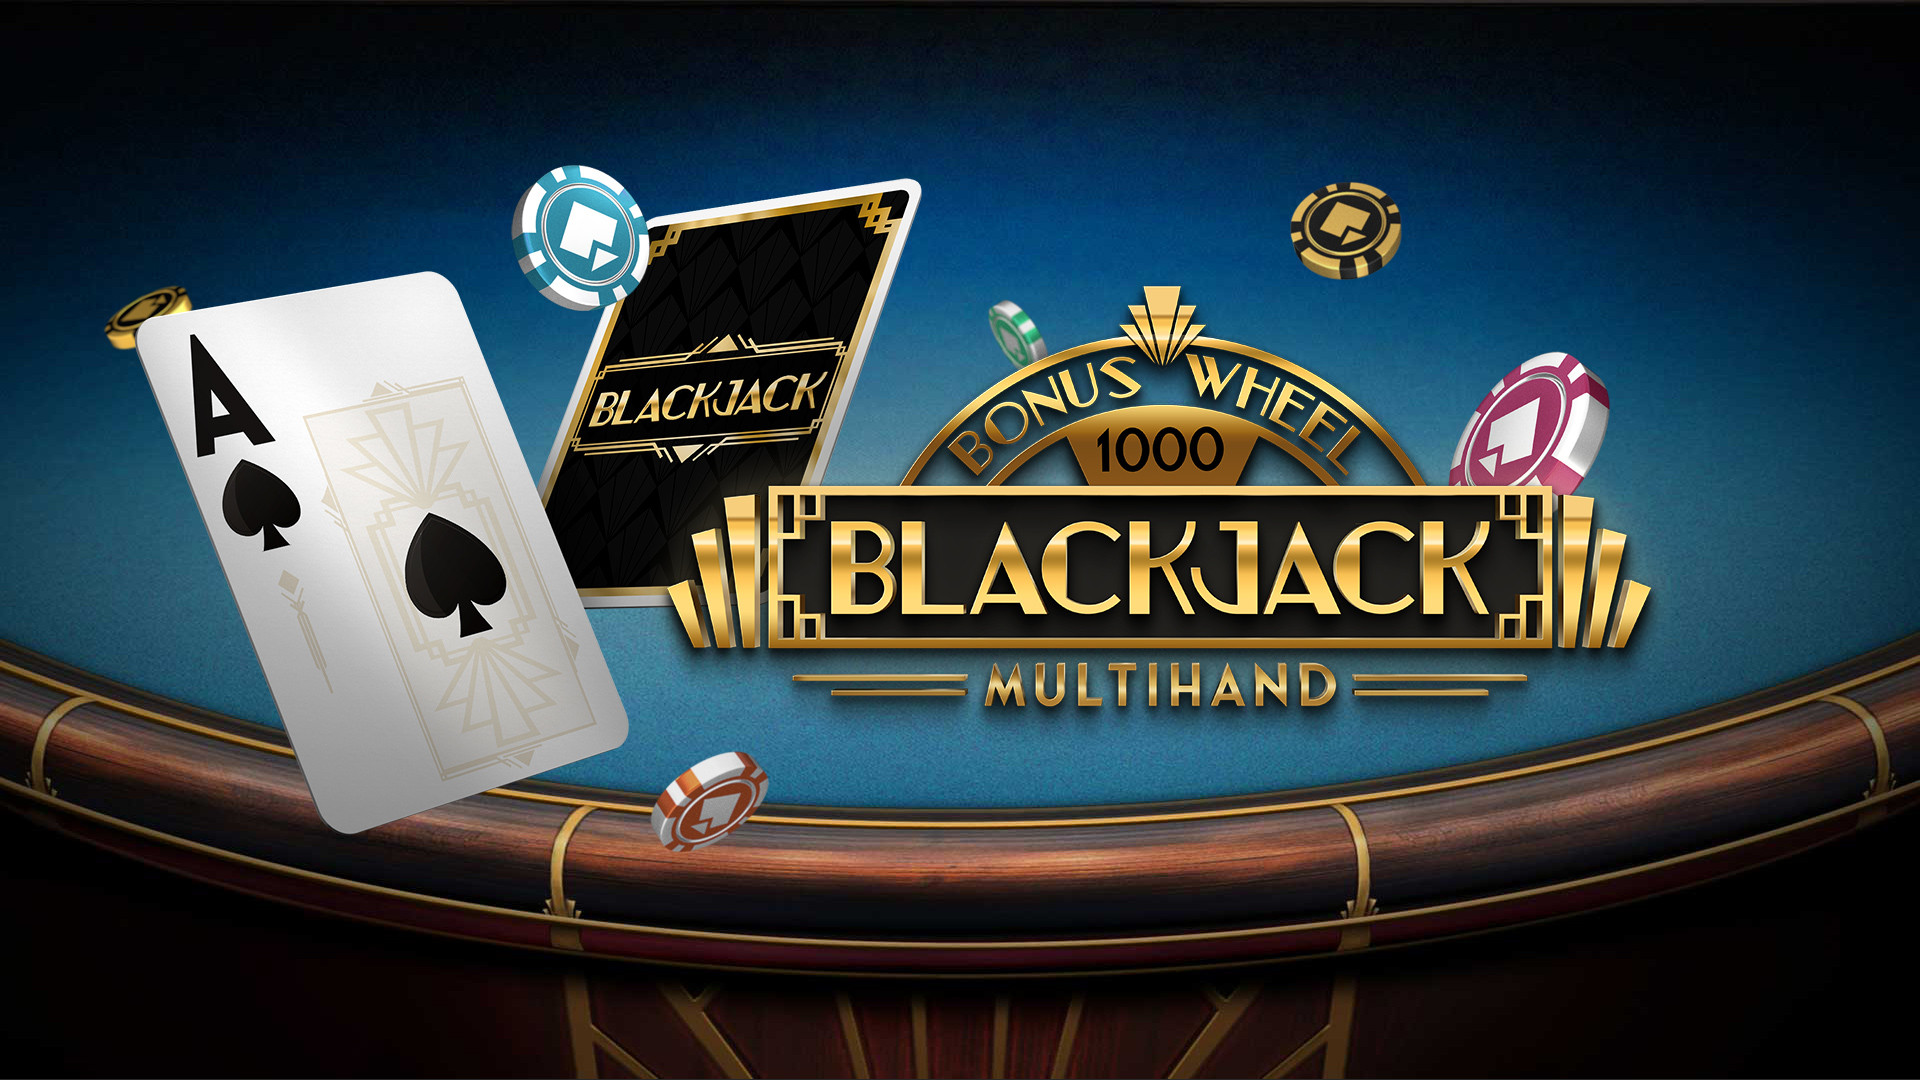 Blackjack Bonus Wheel 1000